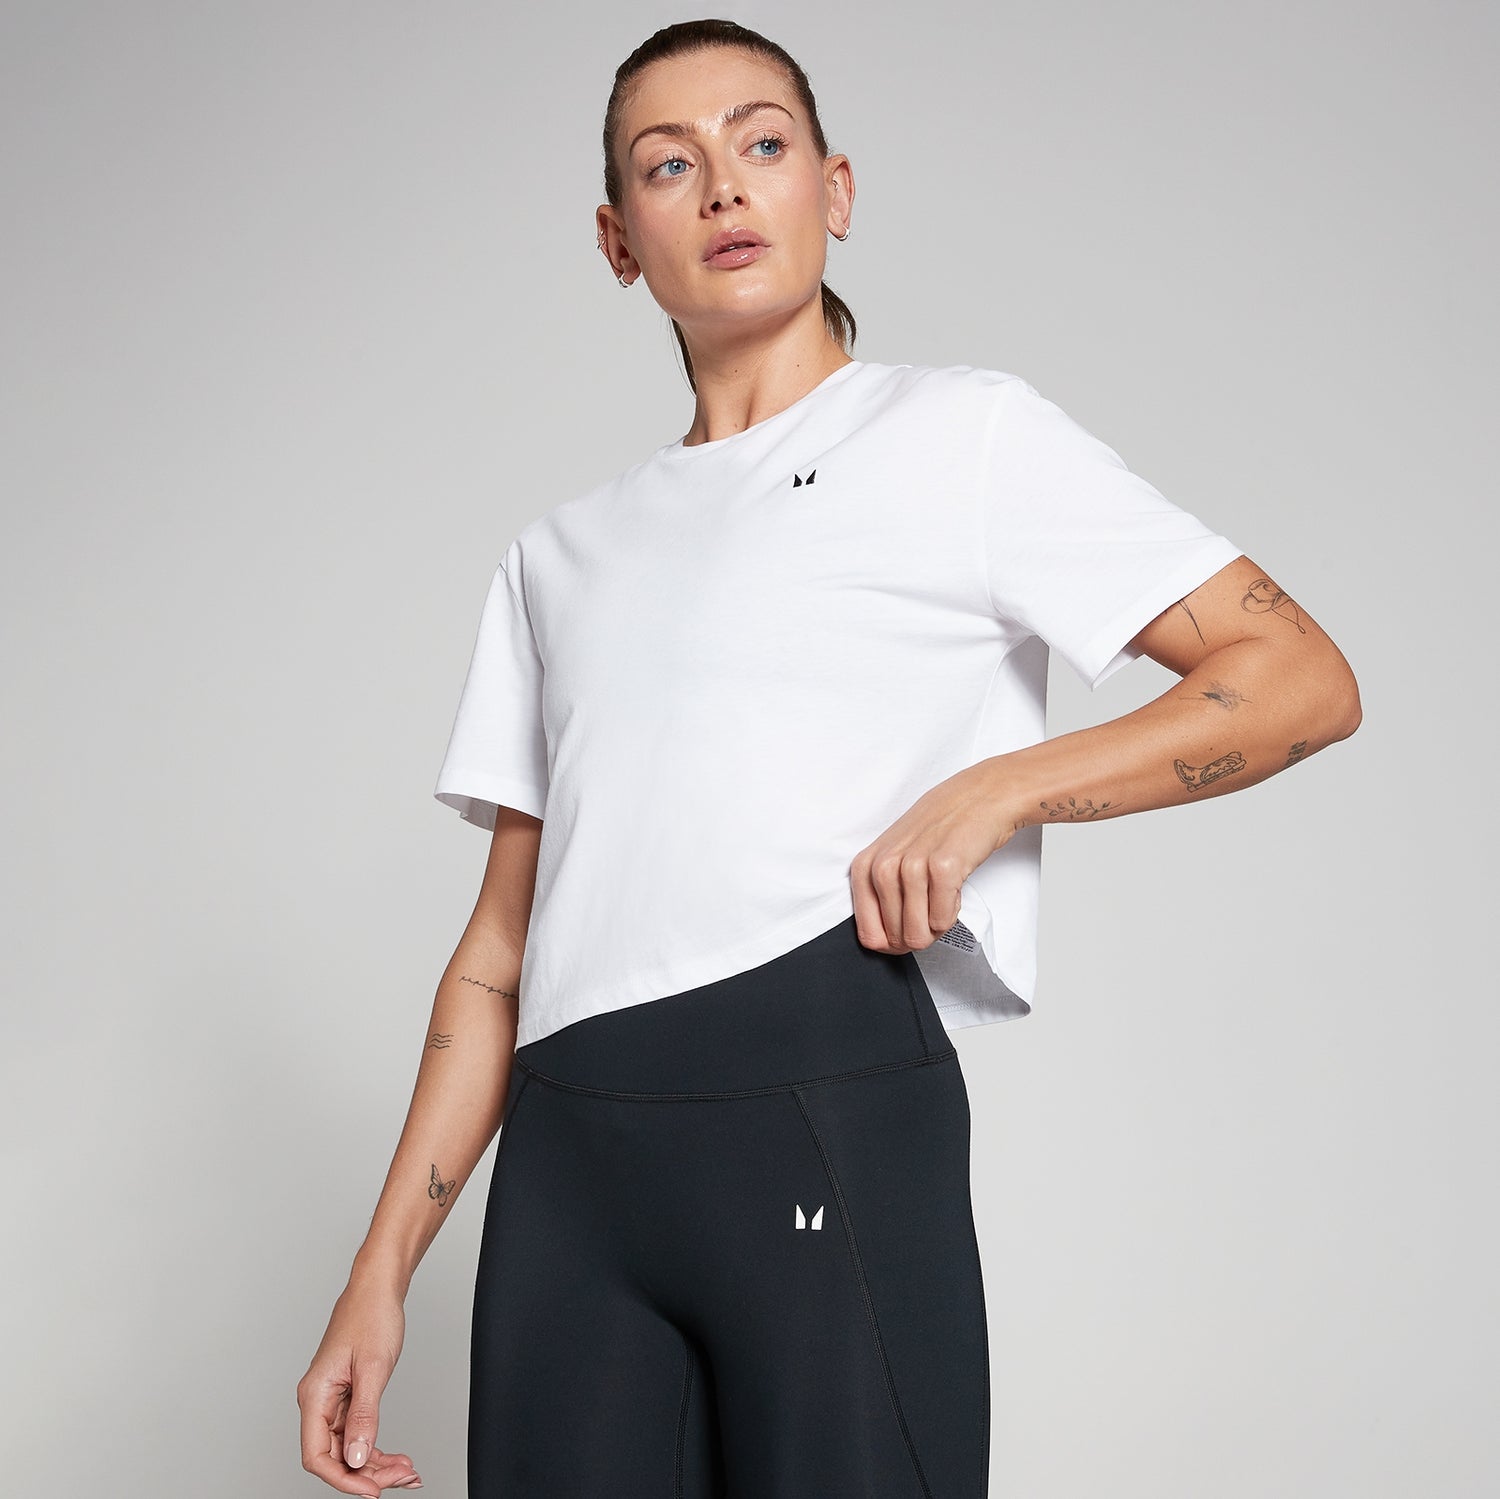 Женская укороченная футболка с короткими рукавами MP Basics — белый цвет - XXS